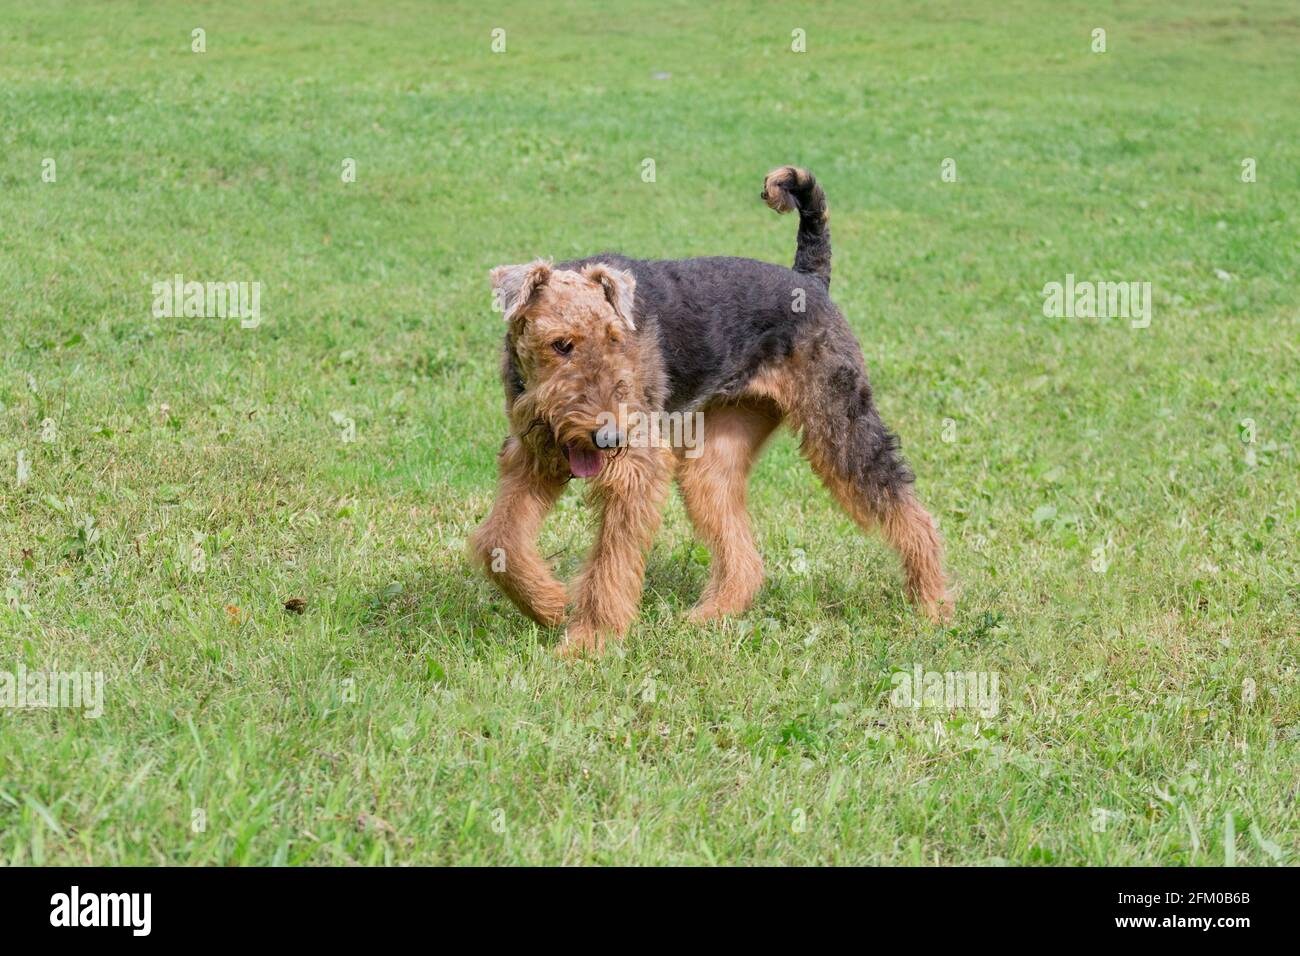 Le terrier d'Airedale marche sur une herbe verte dans le parc d'été. Terrier Bingley ou terrier au bord de l'eau. Animaux de compagnie. Chien de race. Banque D'Images